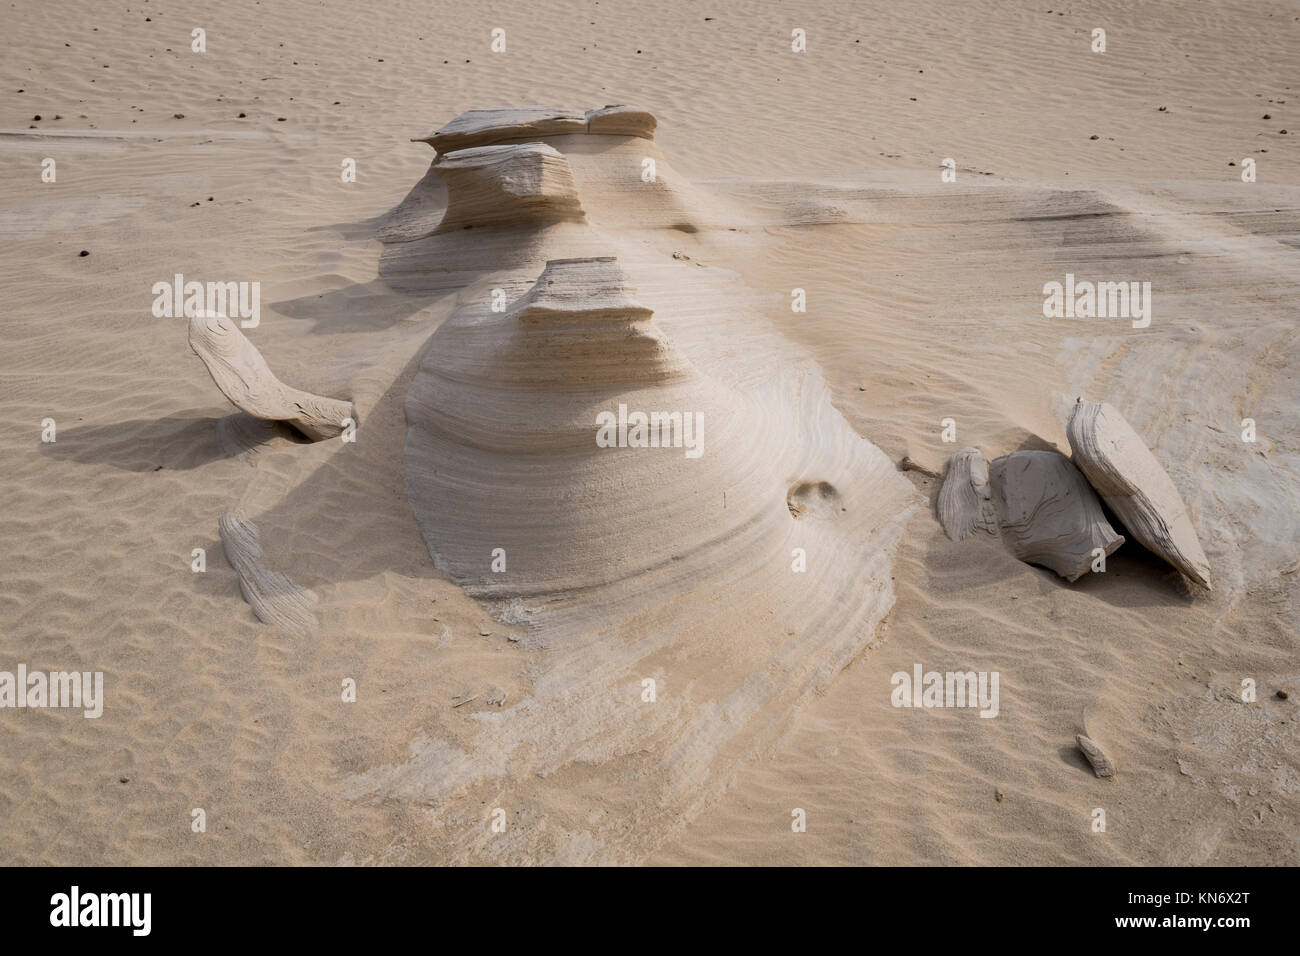 Pierres de sable Al Wathba ou dunes fossiles dans le désert d'Abu Dhabi, Émirats arabes Unis Banque D'Images